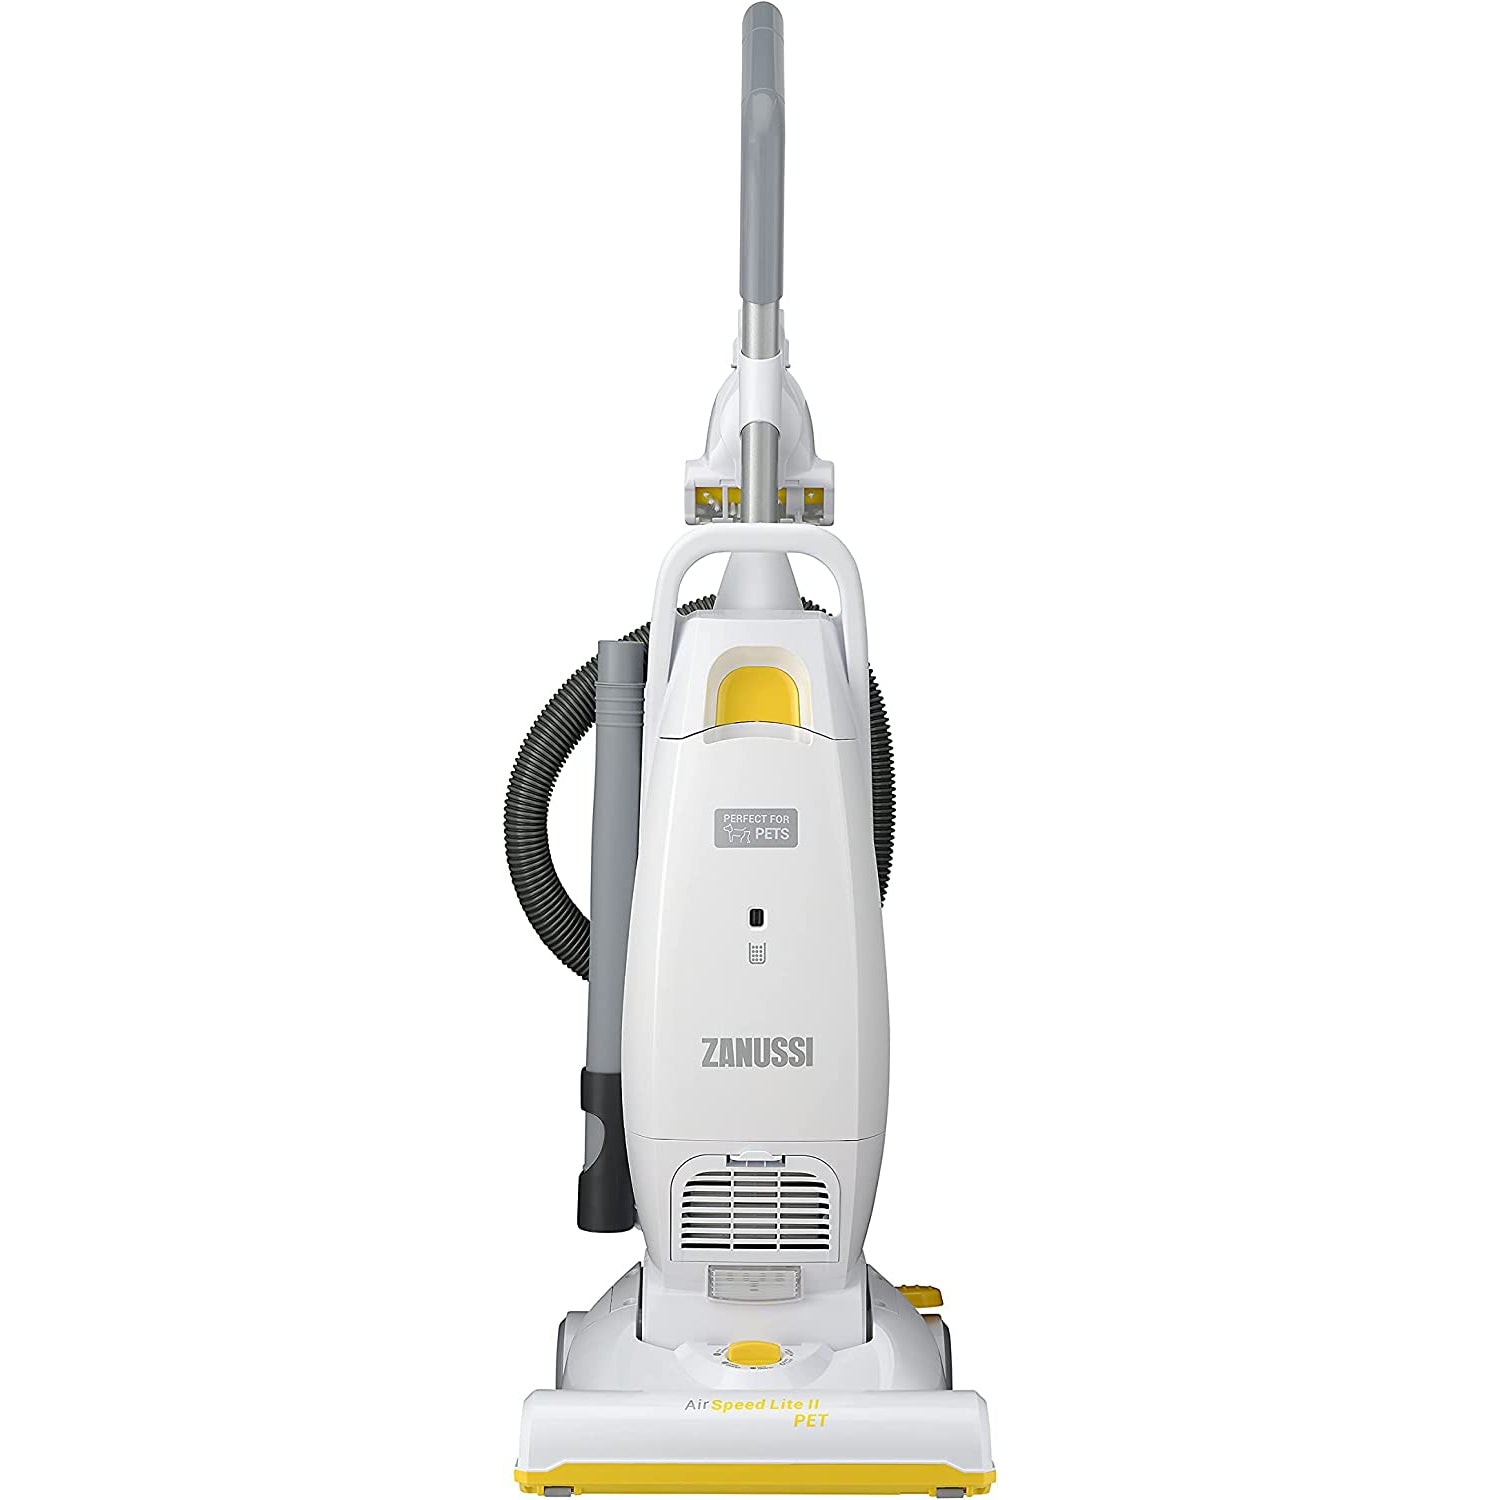 Zanussi AirSpeed Lite II Pet ZAN2087PT Upright Vacuum Cleaner - White/Yellow - Pristine